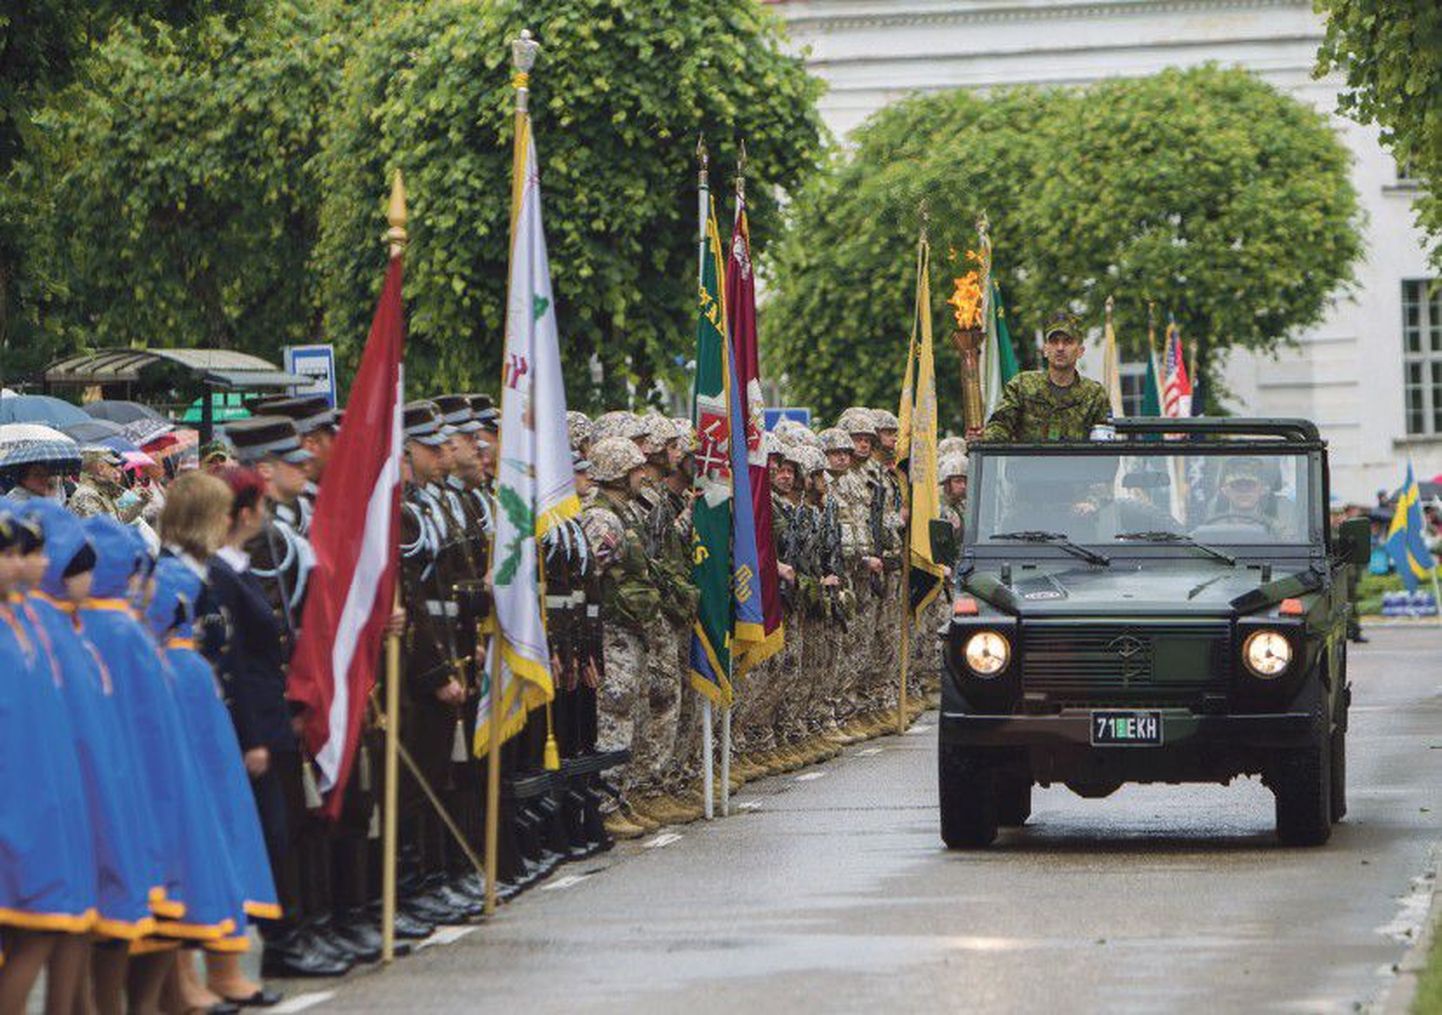 Mullune võidupüha paraad, kus võis kõrvuti seismas näha kodutütreid, Läti ja Ameerika Ühendriikide sõdureid.